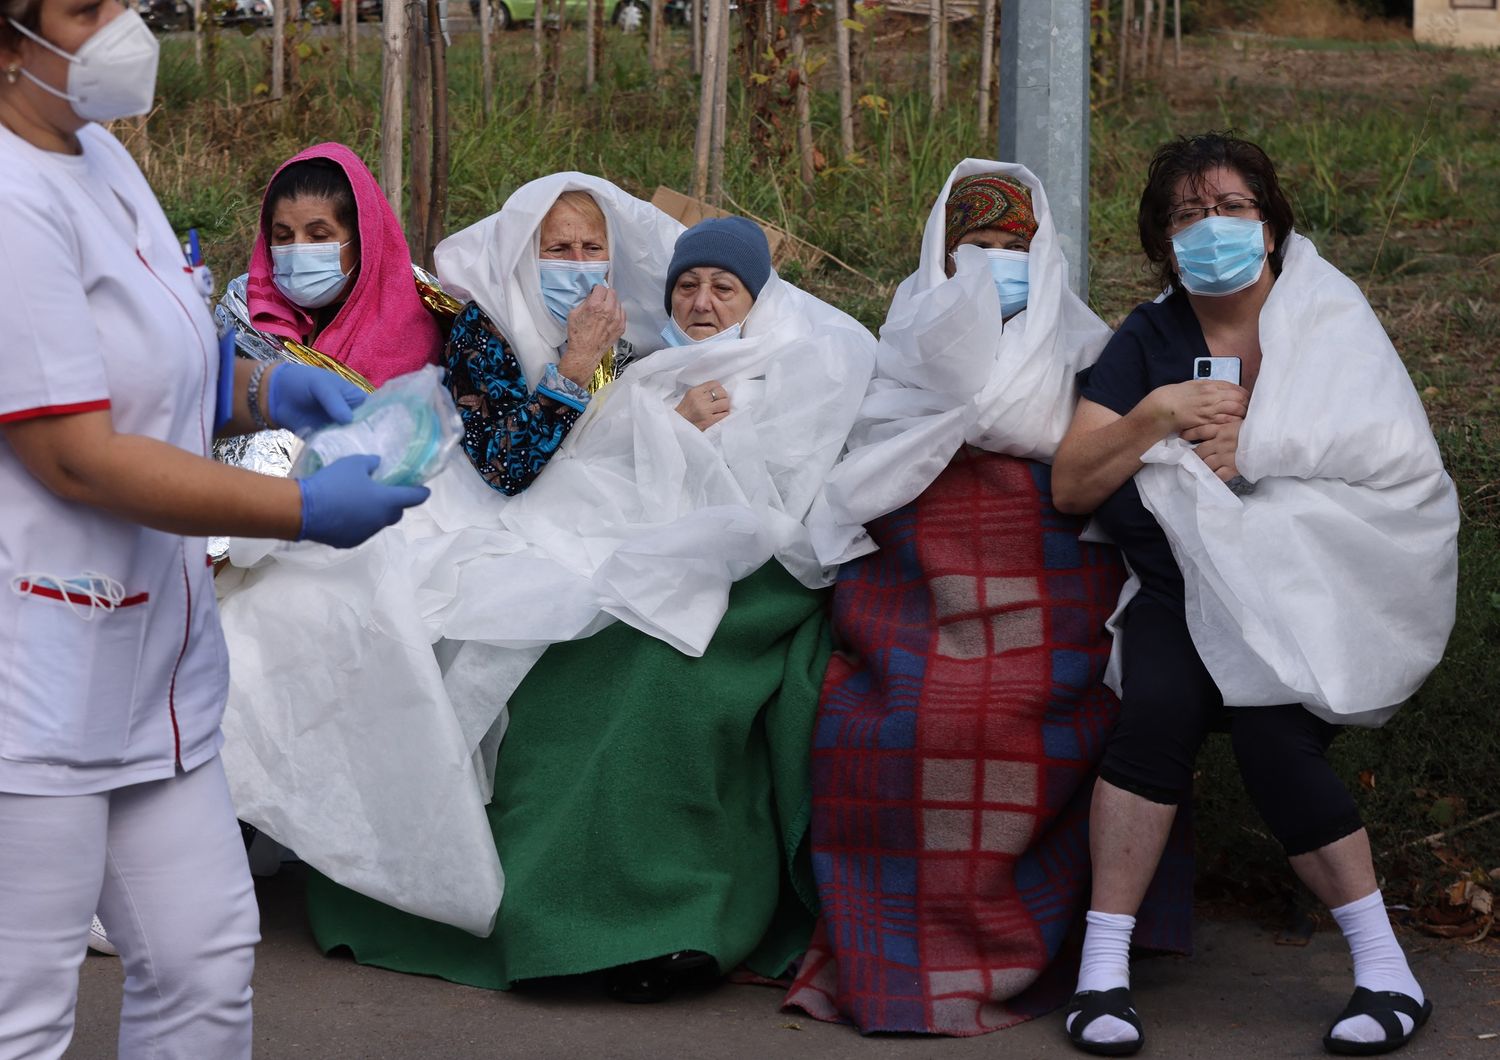 Alcuni pazienti dell'ospedale di Costanza in Romania evacuati dopo l'incendio